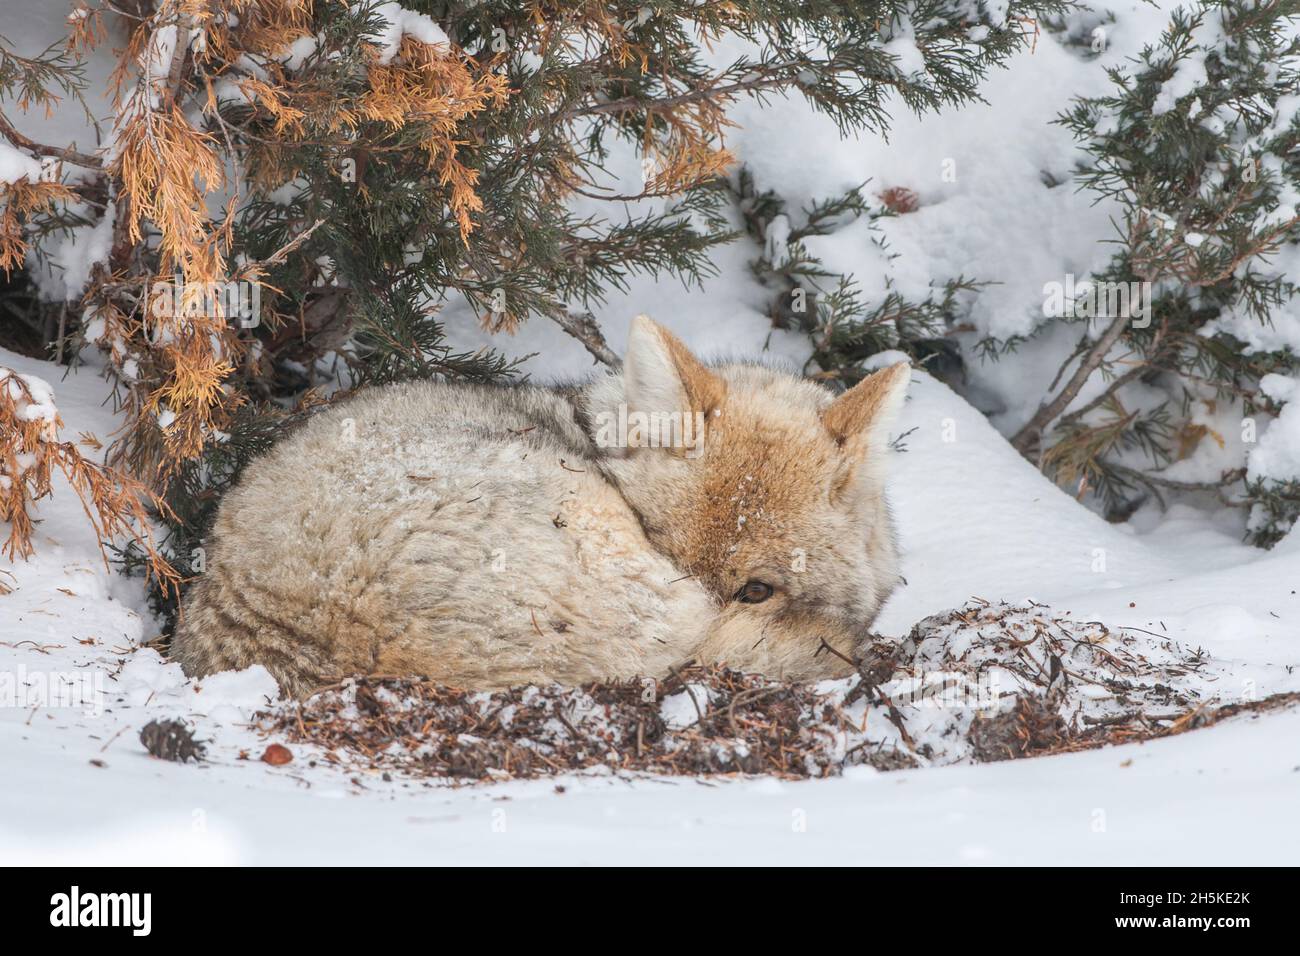 Un coyote endormi (Canis latrans) s'est enroulé dans une balle sous un arbre dans la neige, piquant à la caméra Banque D'Images